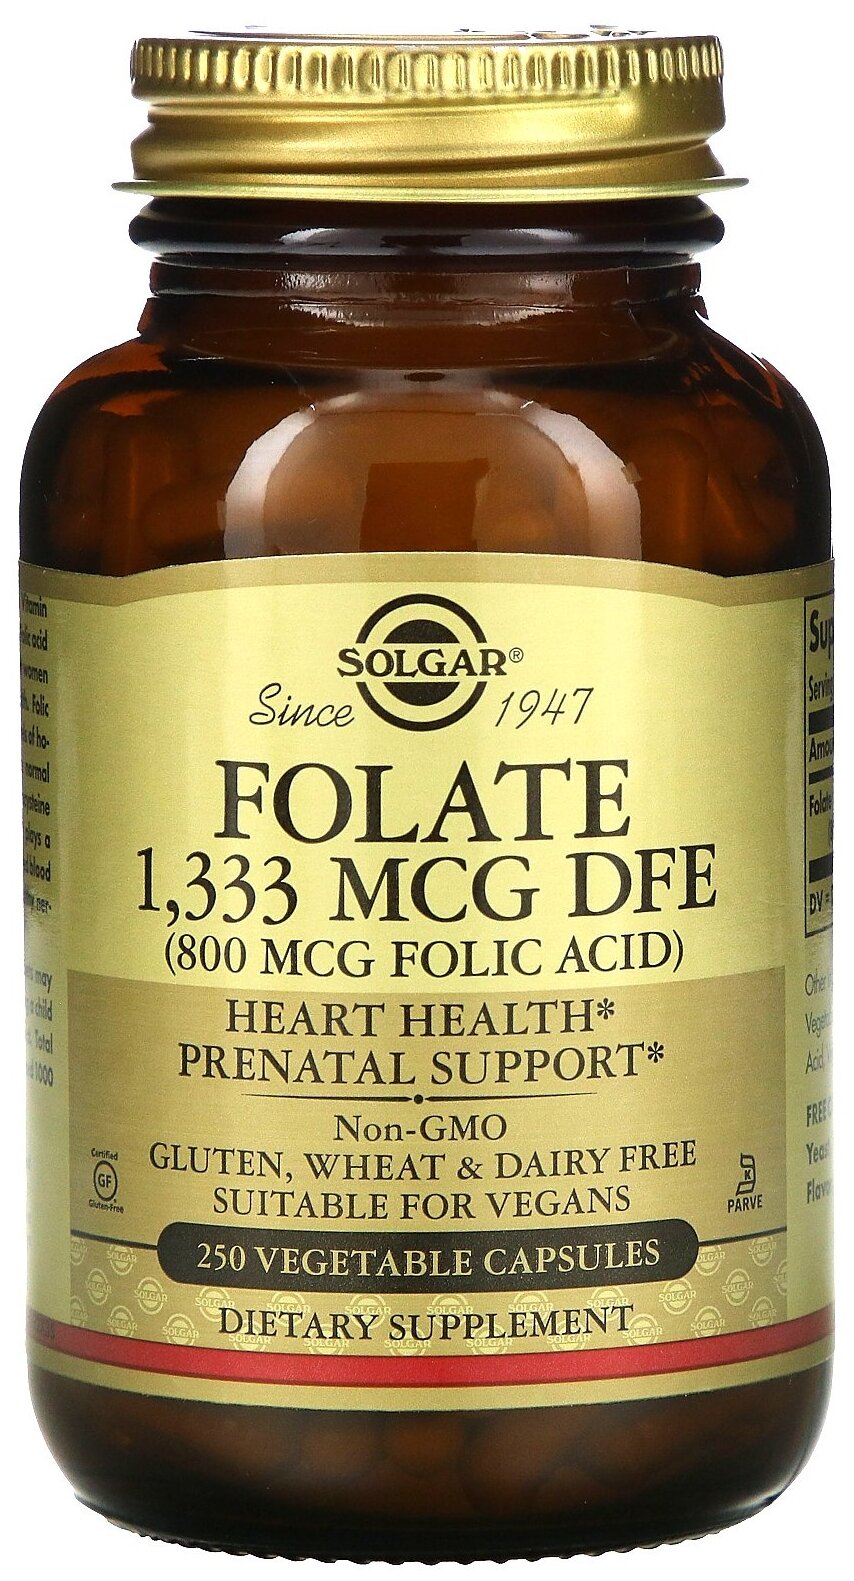 Капсулы SOLGAR Folate 1333 мкг DFE (Folic Acid 800 мкг), 270 г, 800 мкг, 250 шт.